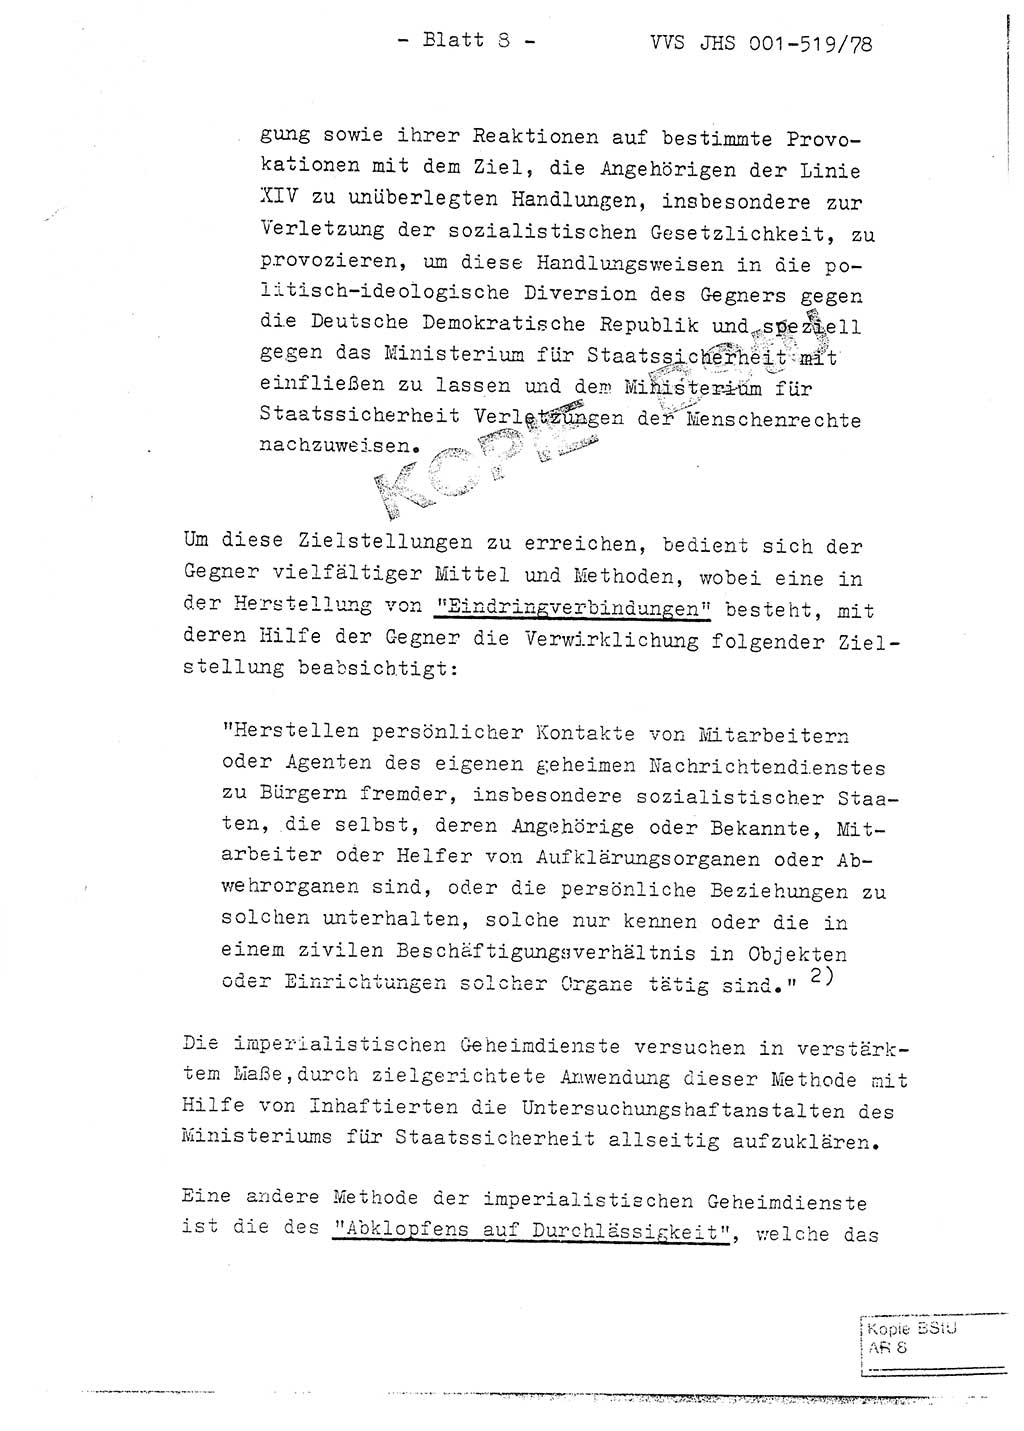 Fachschulabschlußarbeit Hauptmann Alfons Lützelberger (Abt. ⅩⅣ), Ministerium für Staatssicherheit (MfS) [Deutsche Demokratische Republik (DDR)], Juristische Hochschule (JHS), Vertrauliche Verschlußsache (VVS) 001-519/78, Potsdam 1978, Blatt 8 (FS-Abschl.-Arb. MfS DDR JHS VVS 001-519/78 1978, Bl. 8)